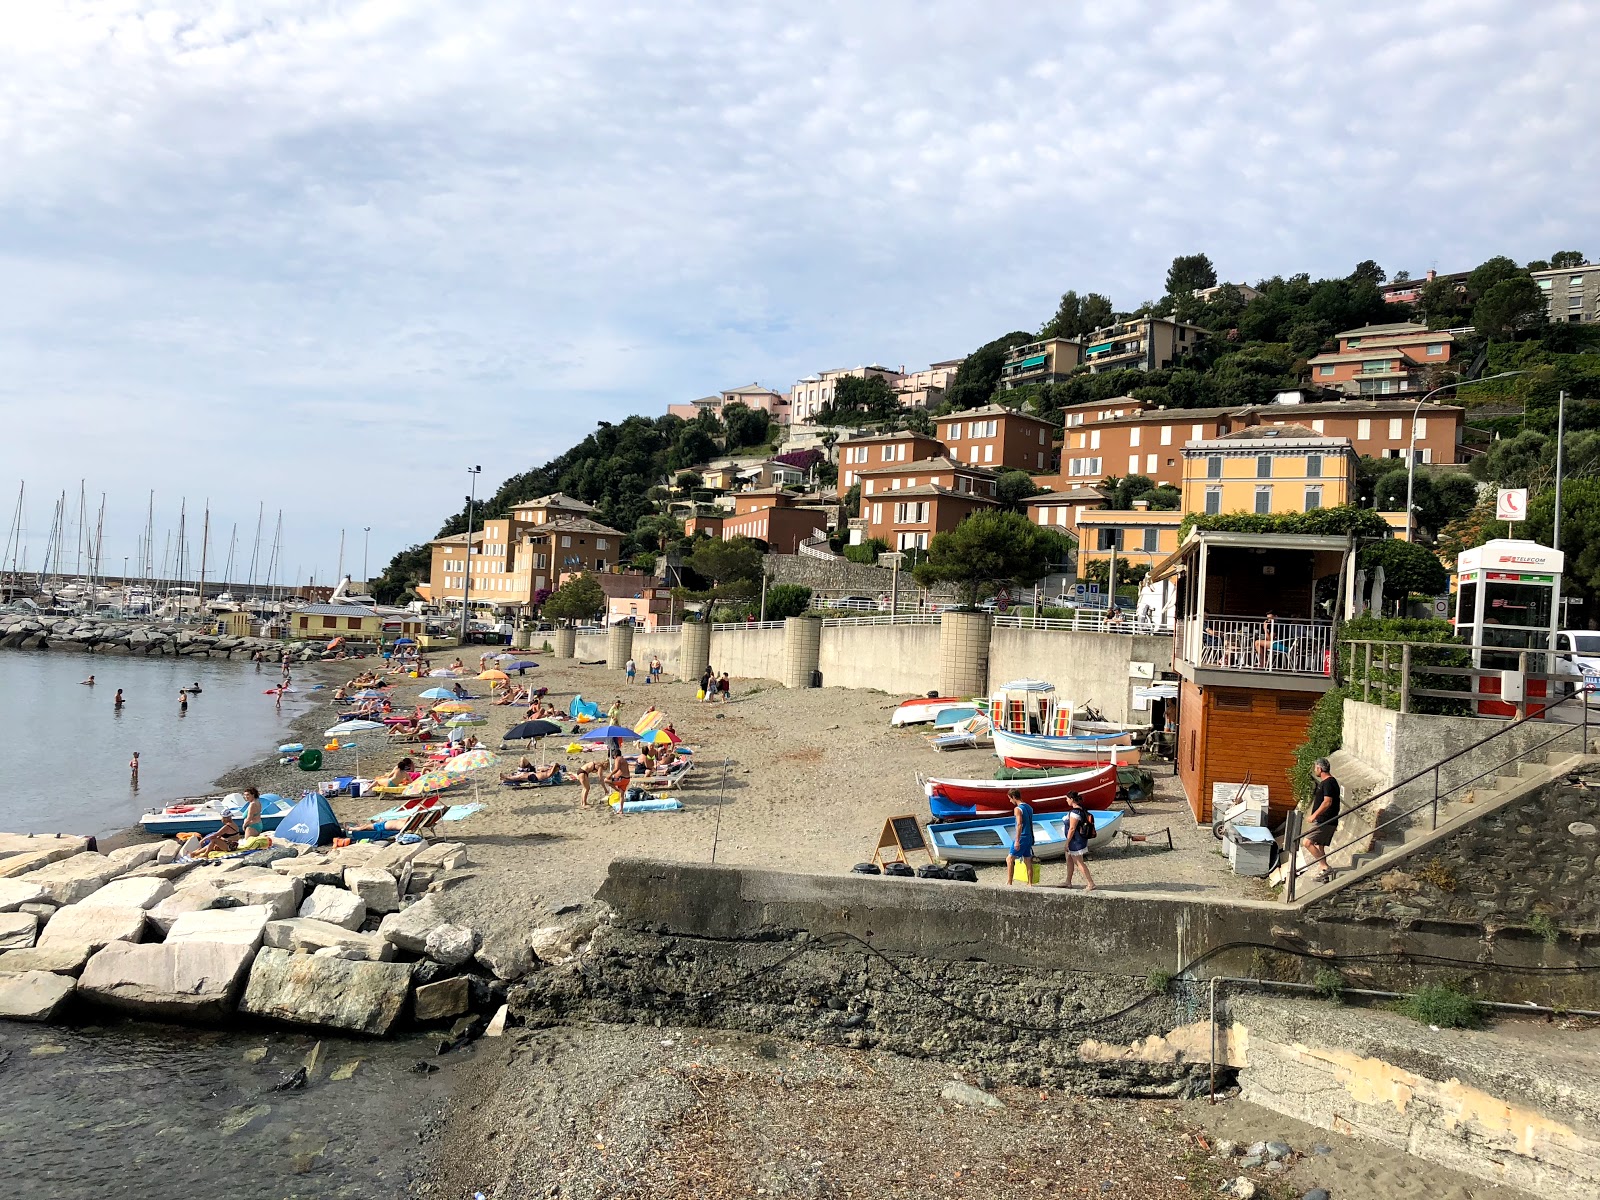 Spiaggia Olanda'in fotoğrafı - rahatlamayı sevenler arasında popüler bir yer